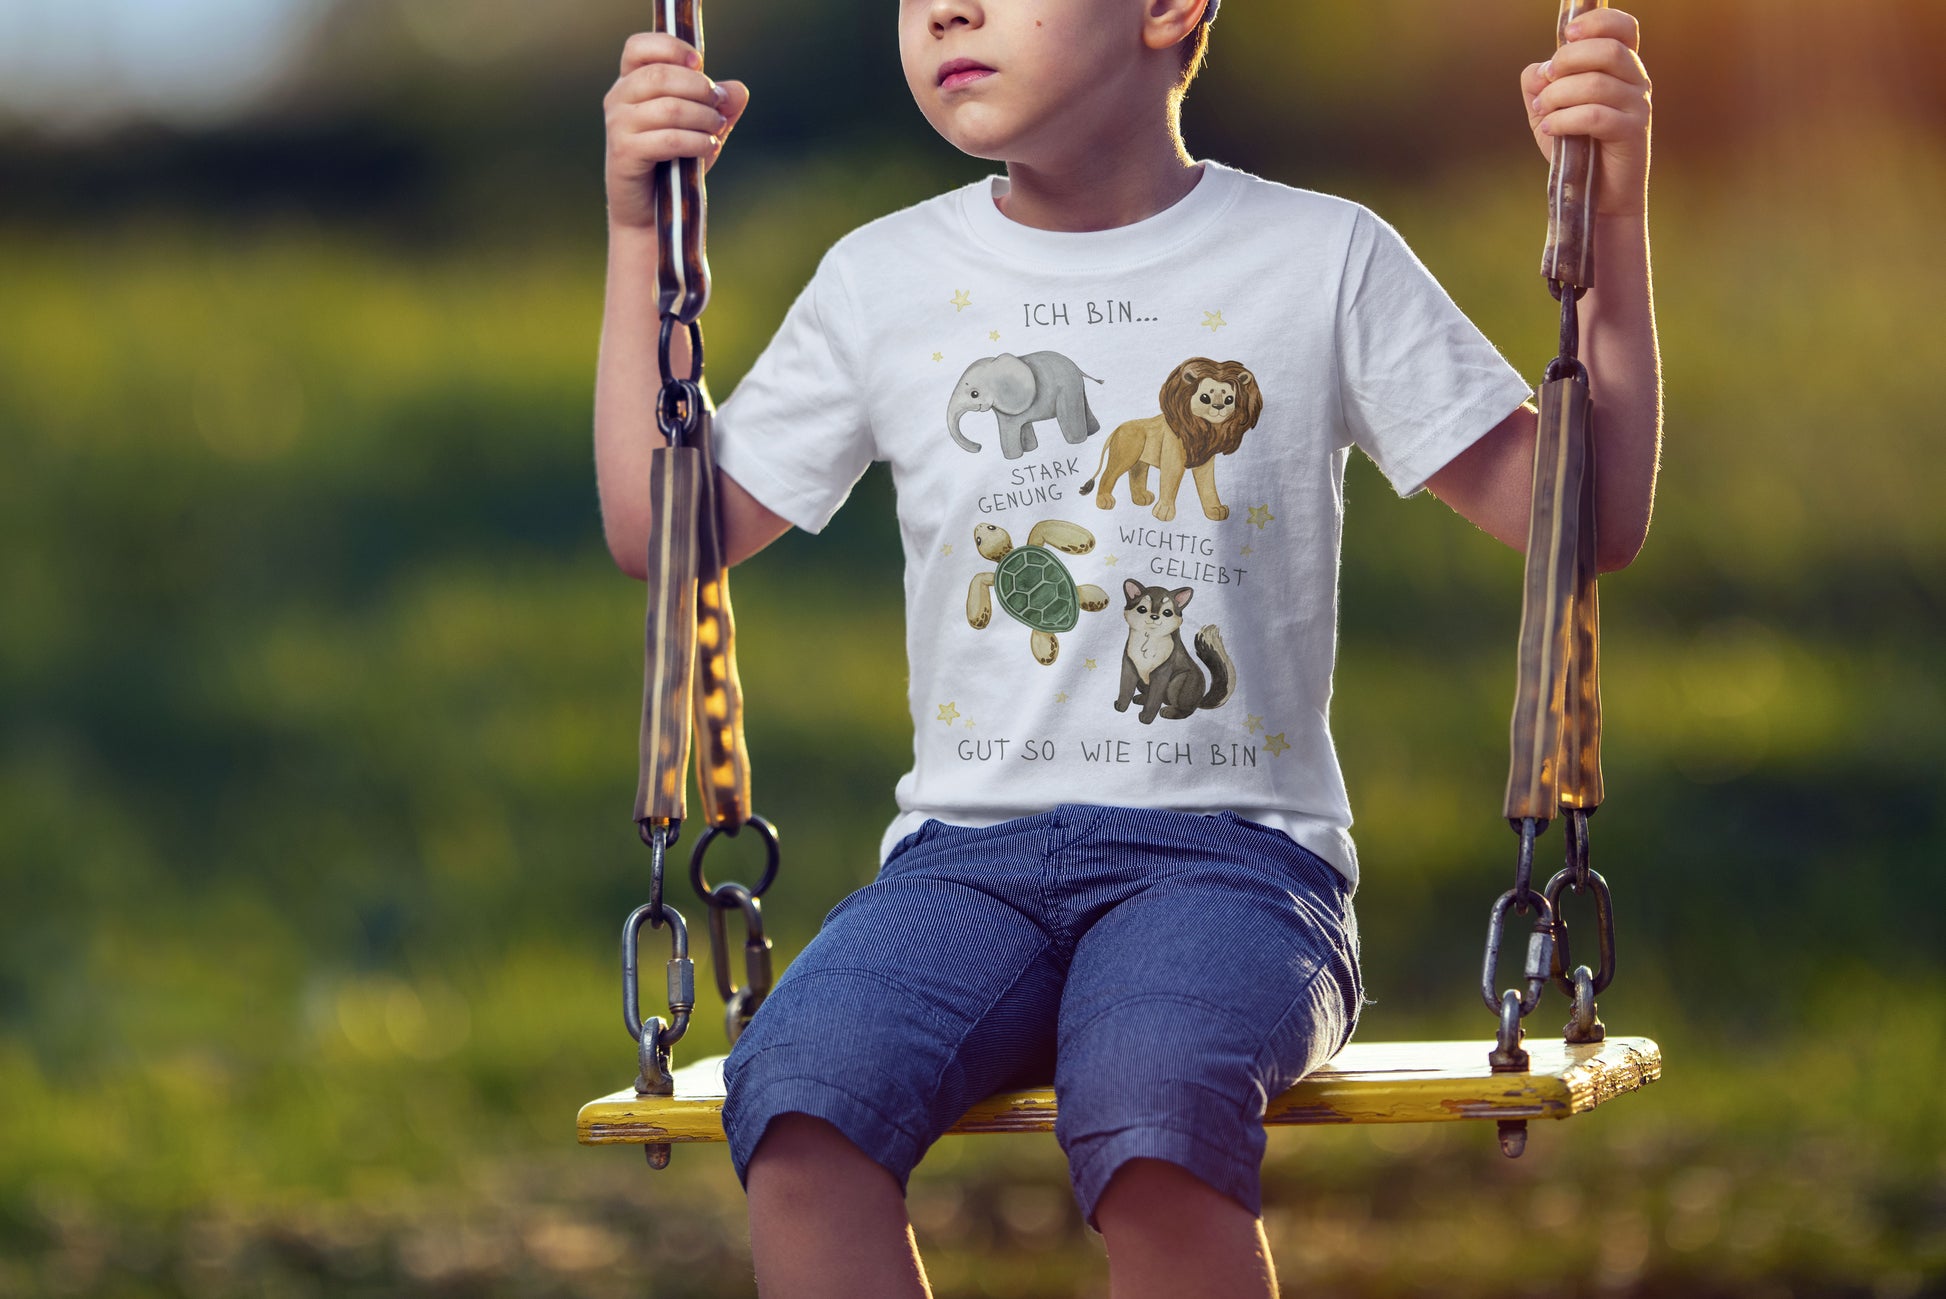 Calm Happy Kids - T-Shirt mit Affirmationen für Kinder (5-14J)